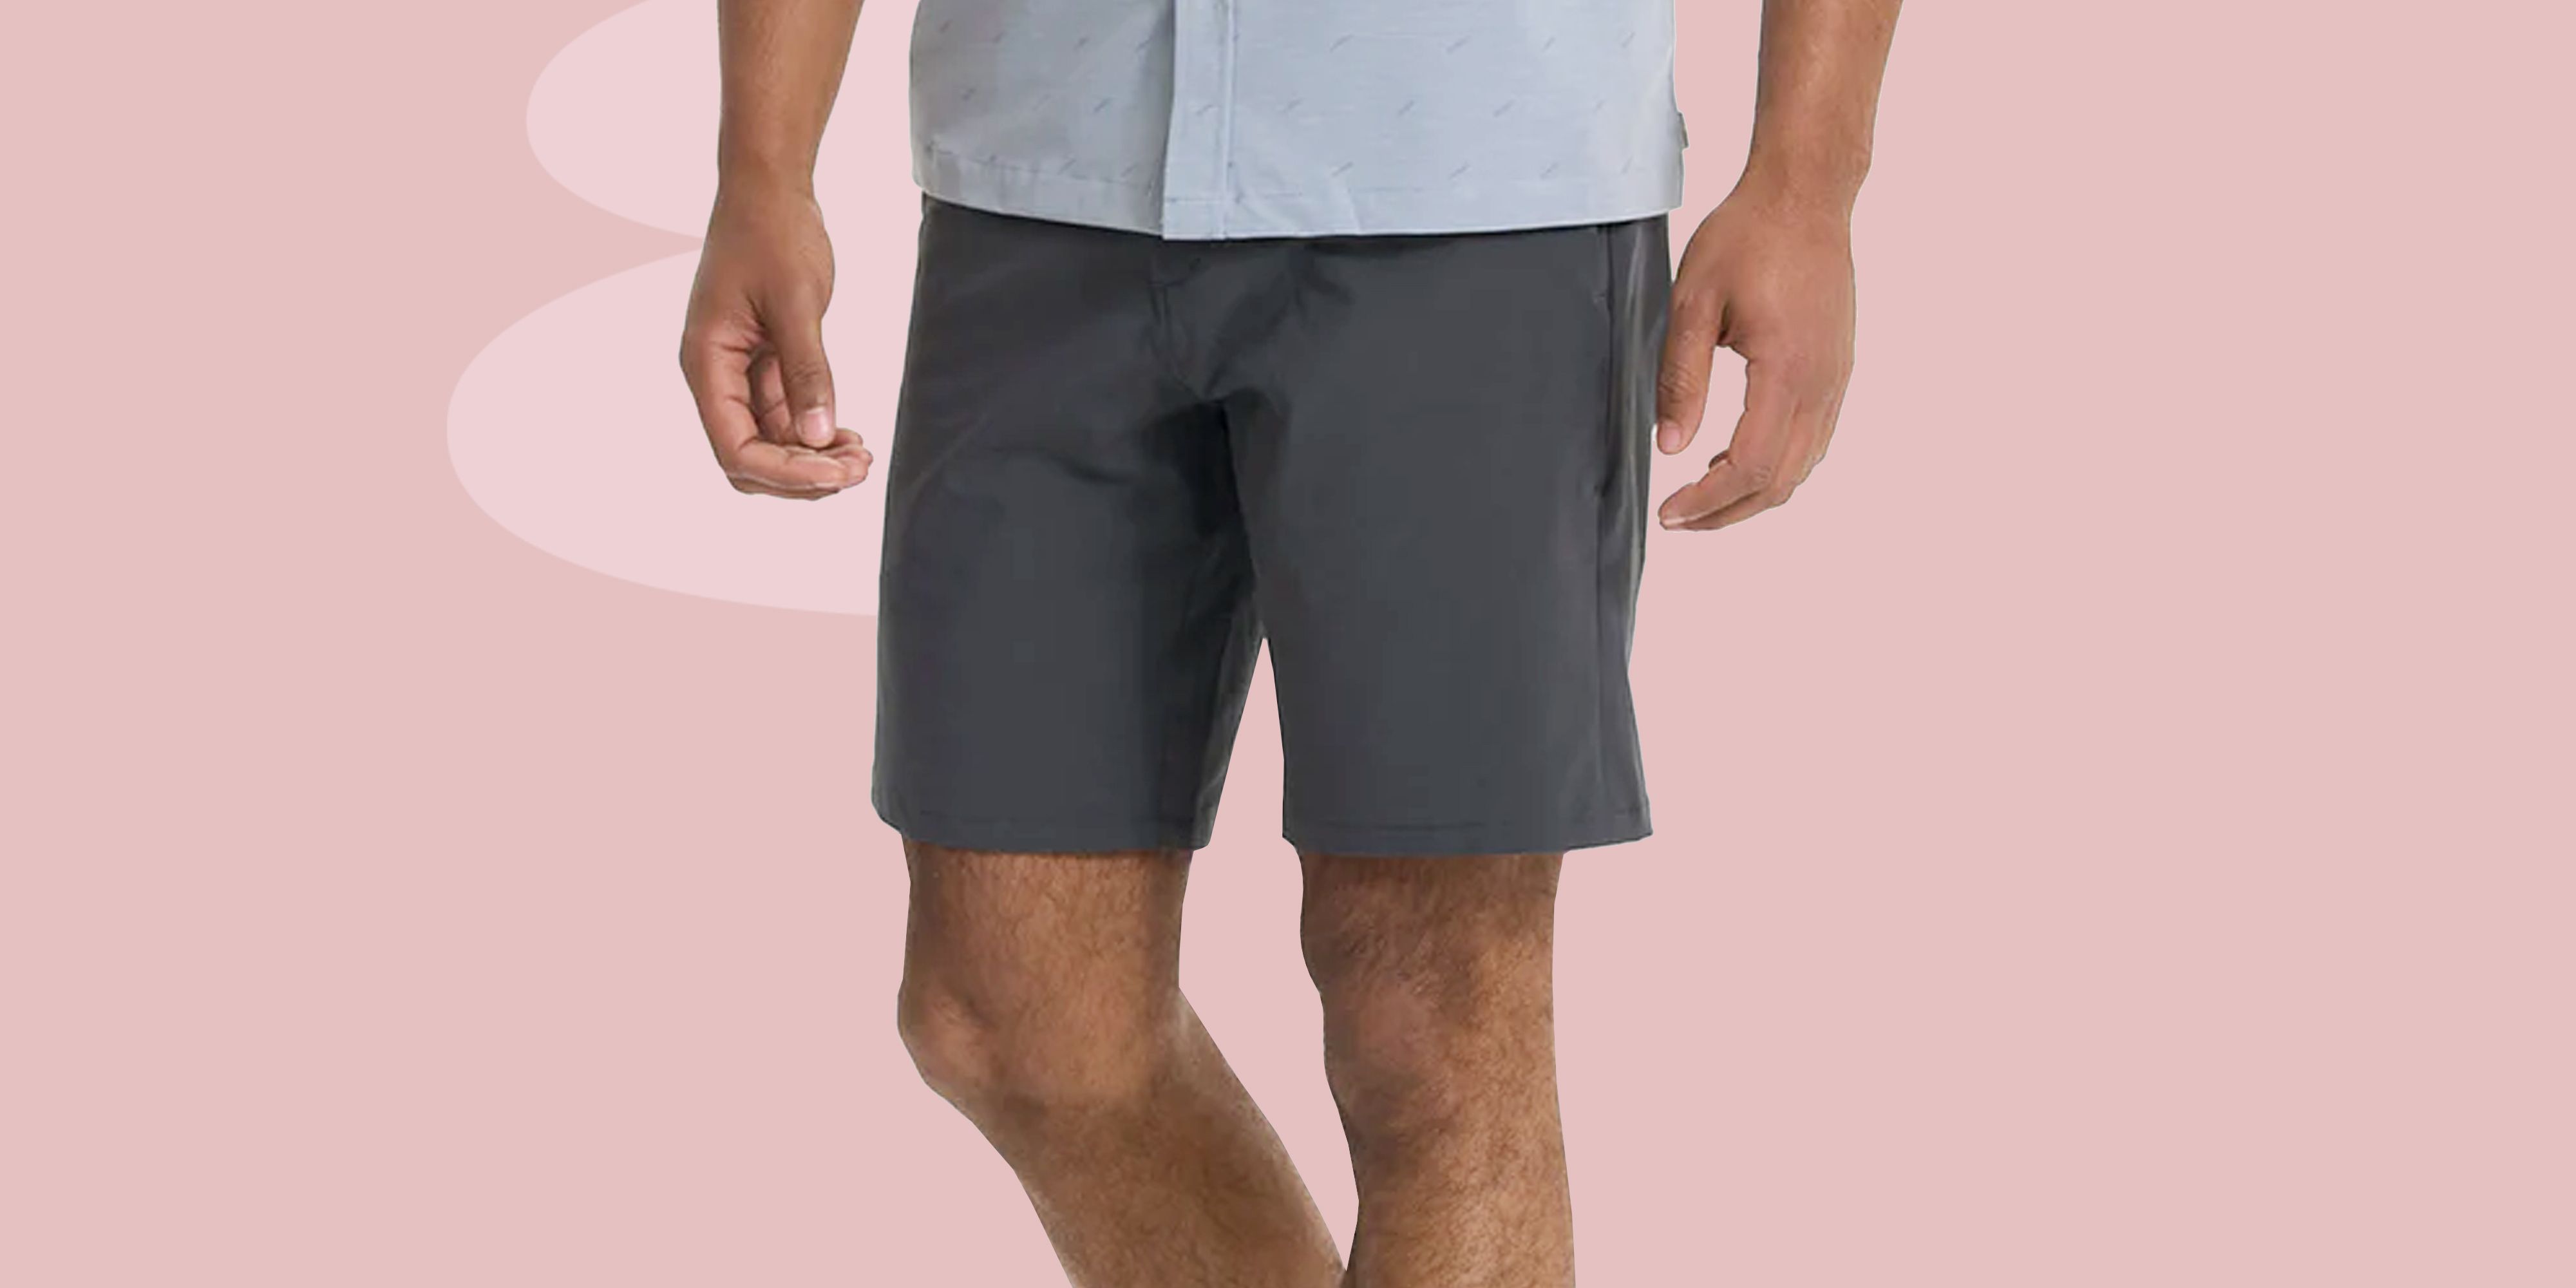 100% cotton Men's Shorts Casual sport Beach Wear Short Pants sizes